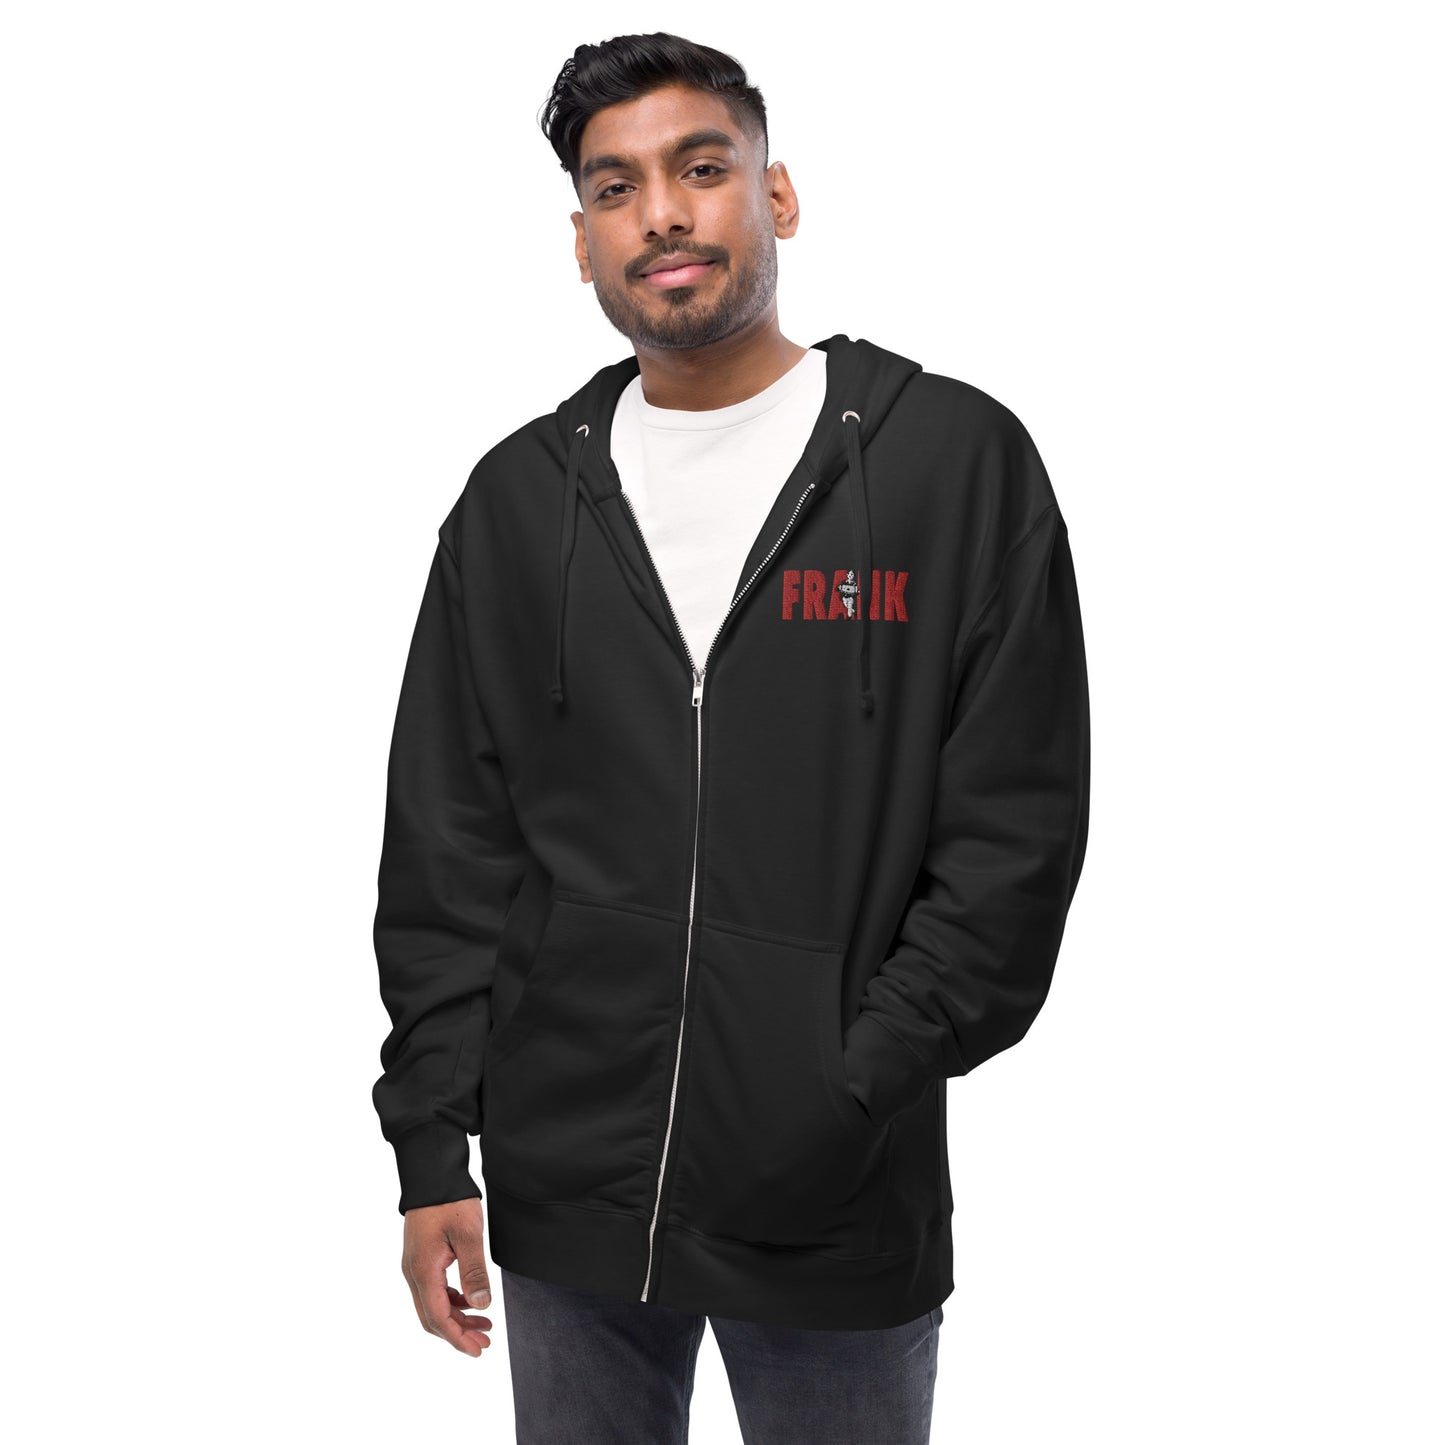 Frank's Laptop Man Unisex fleece zip up hoodie